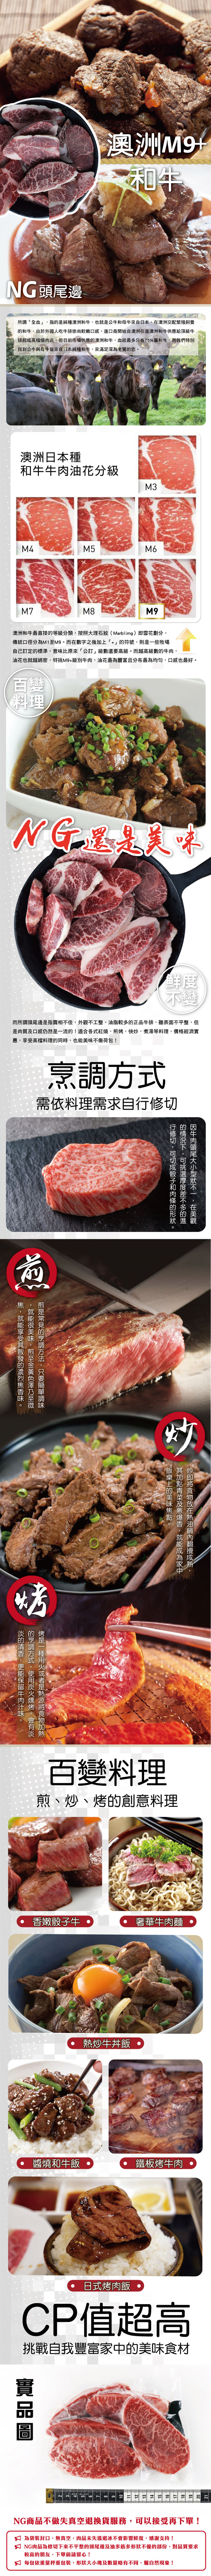  (福利品)【欣明生鮮】澳洲日本種M9極鮮嫩和牛福利牛排 300g/包